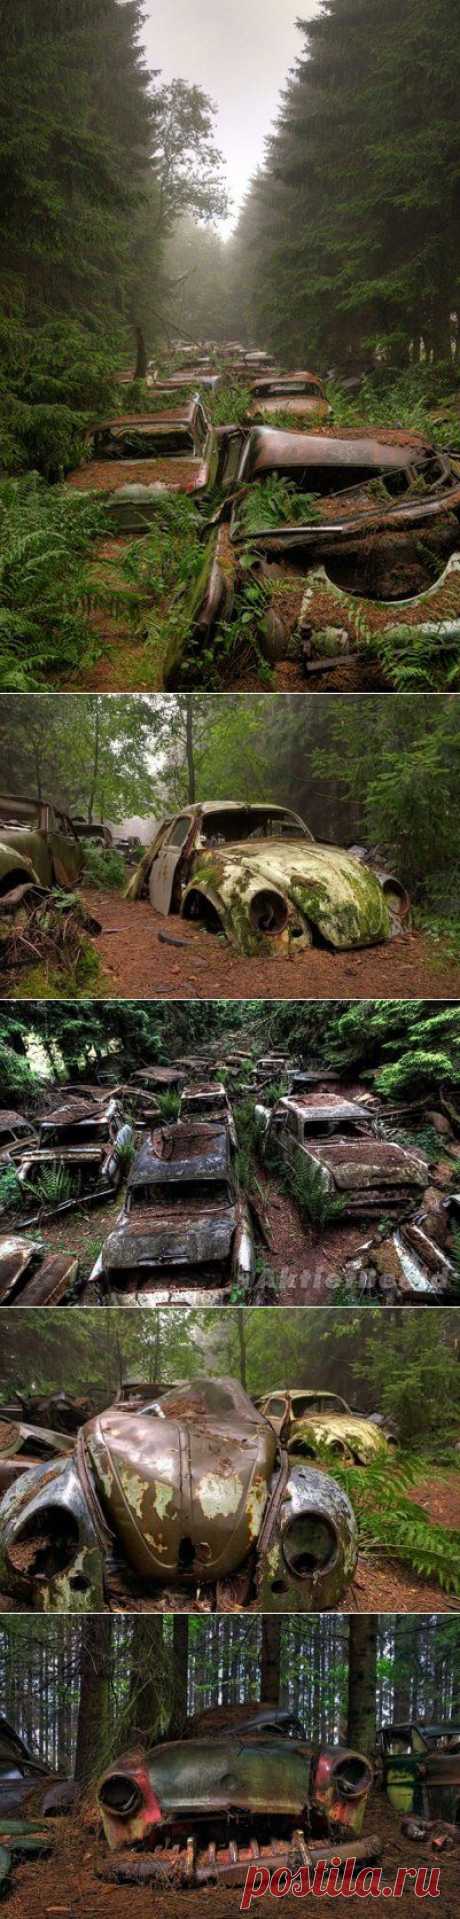 Эти автомобили стоят в пробке в бельгийском лесу больше 70 лет | WorldCity